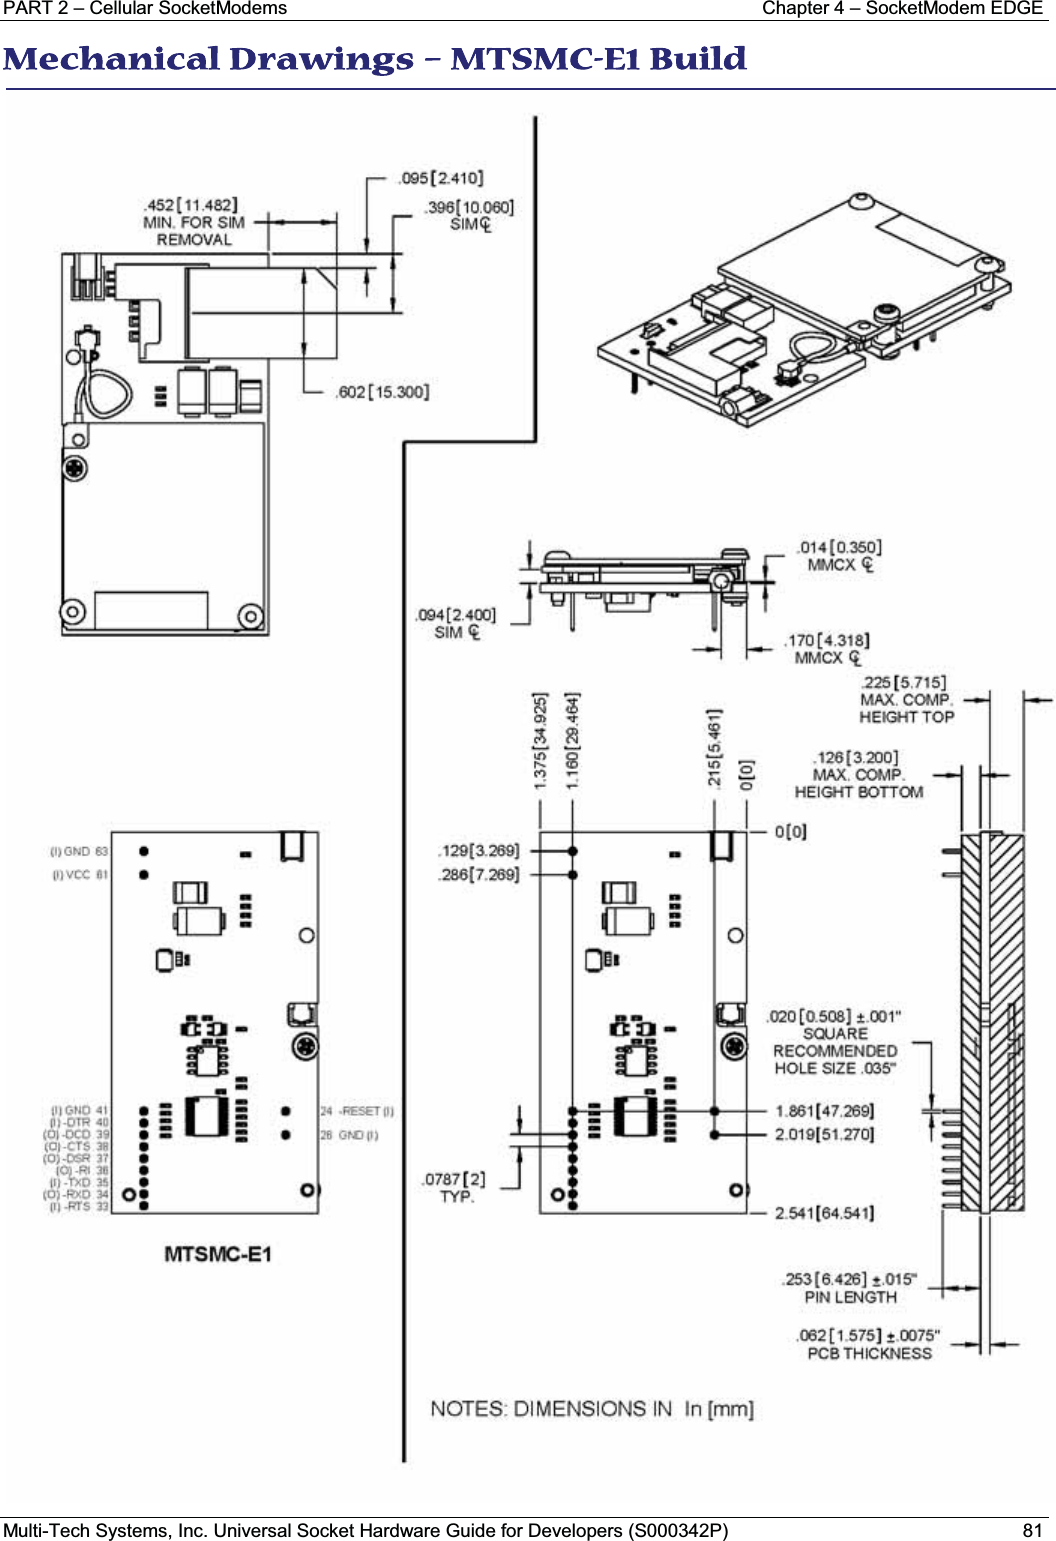 PART 2 – Cellular SocketModems Chapter 4 – SocketModem EDGEMulti-Tech Systems, Inc. Universal Socket Hardware Guide for Developers (S000342P) 81MMechanical Drawings – MTSMC-E1 Build 